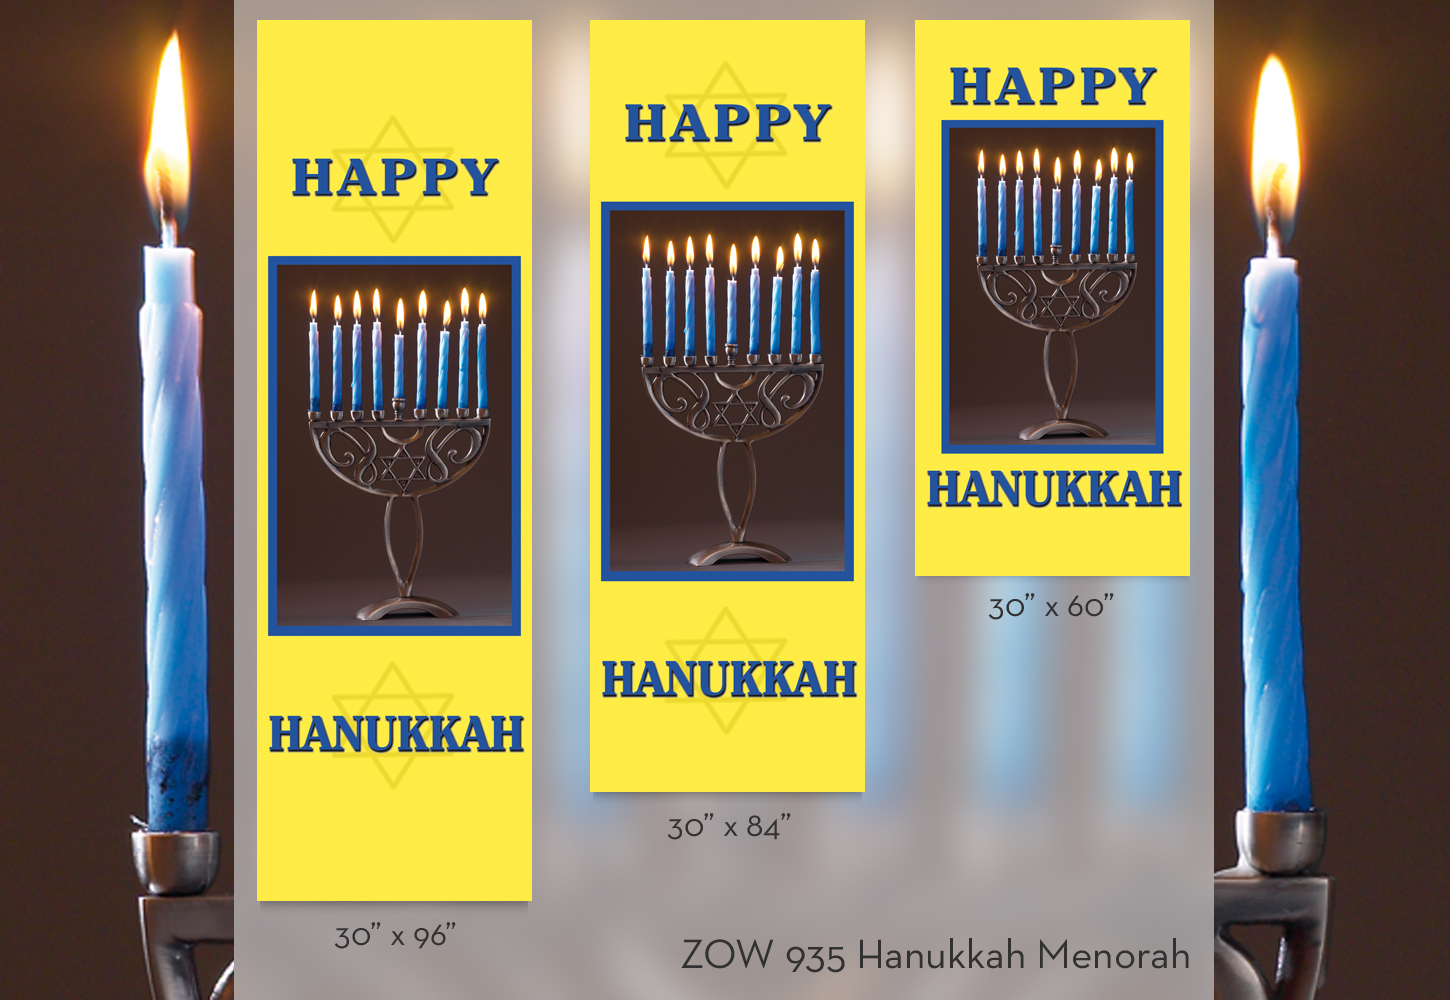 ZOW 935 Hanukkah Menorah